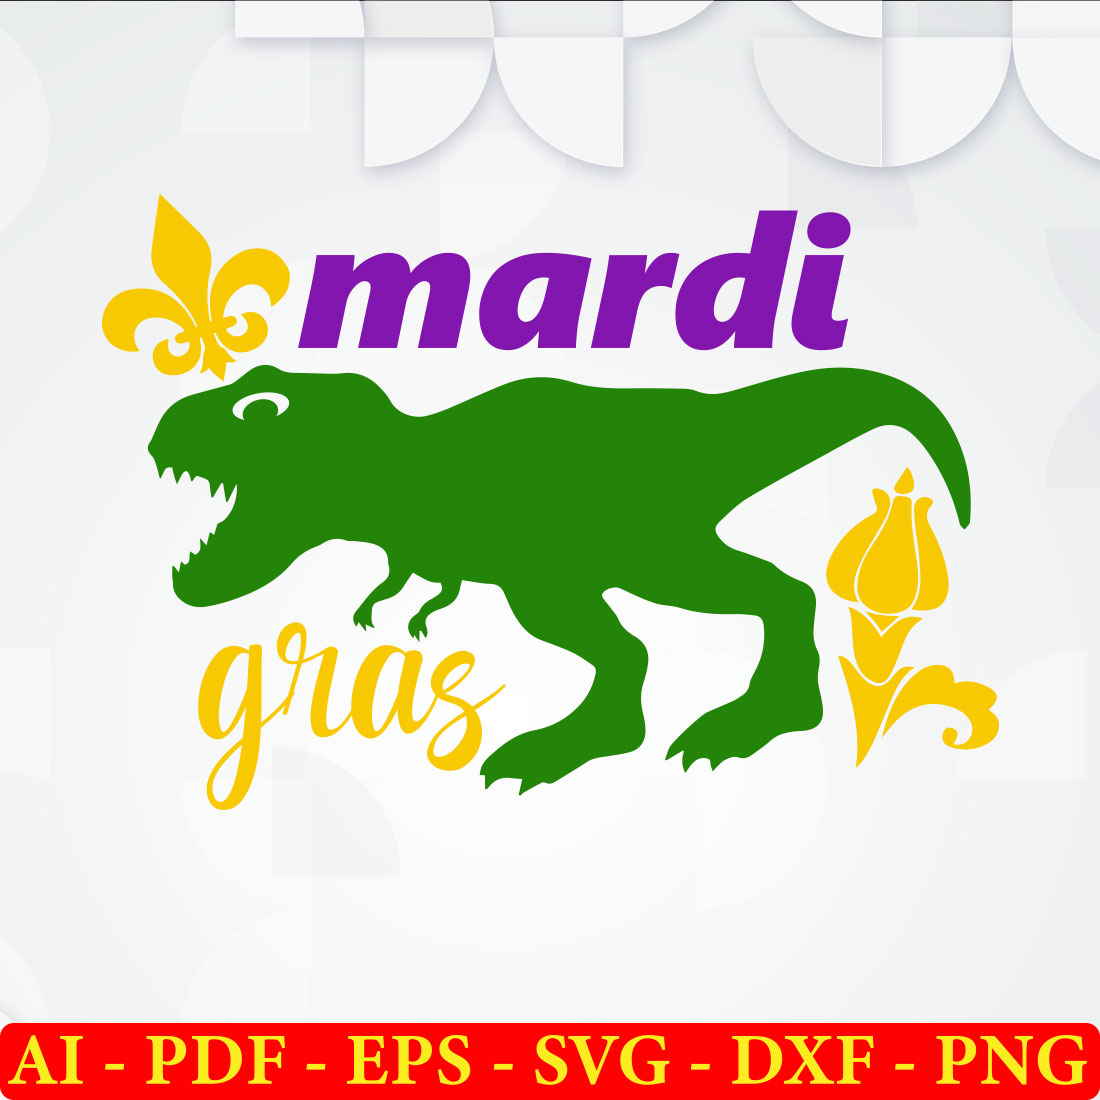 6 Mardi Gras T-shirt SVG Bundle Vol-02 preview image.